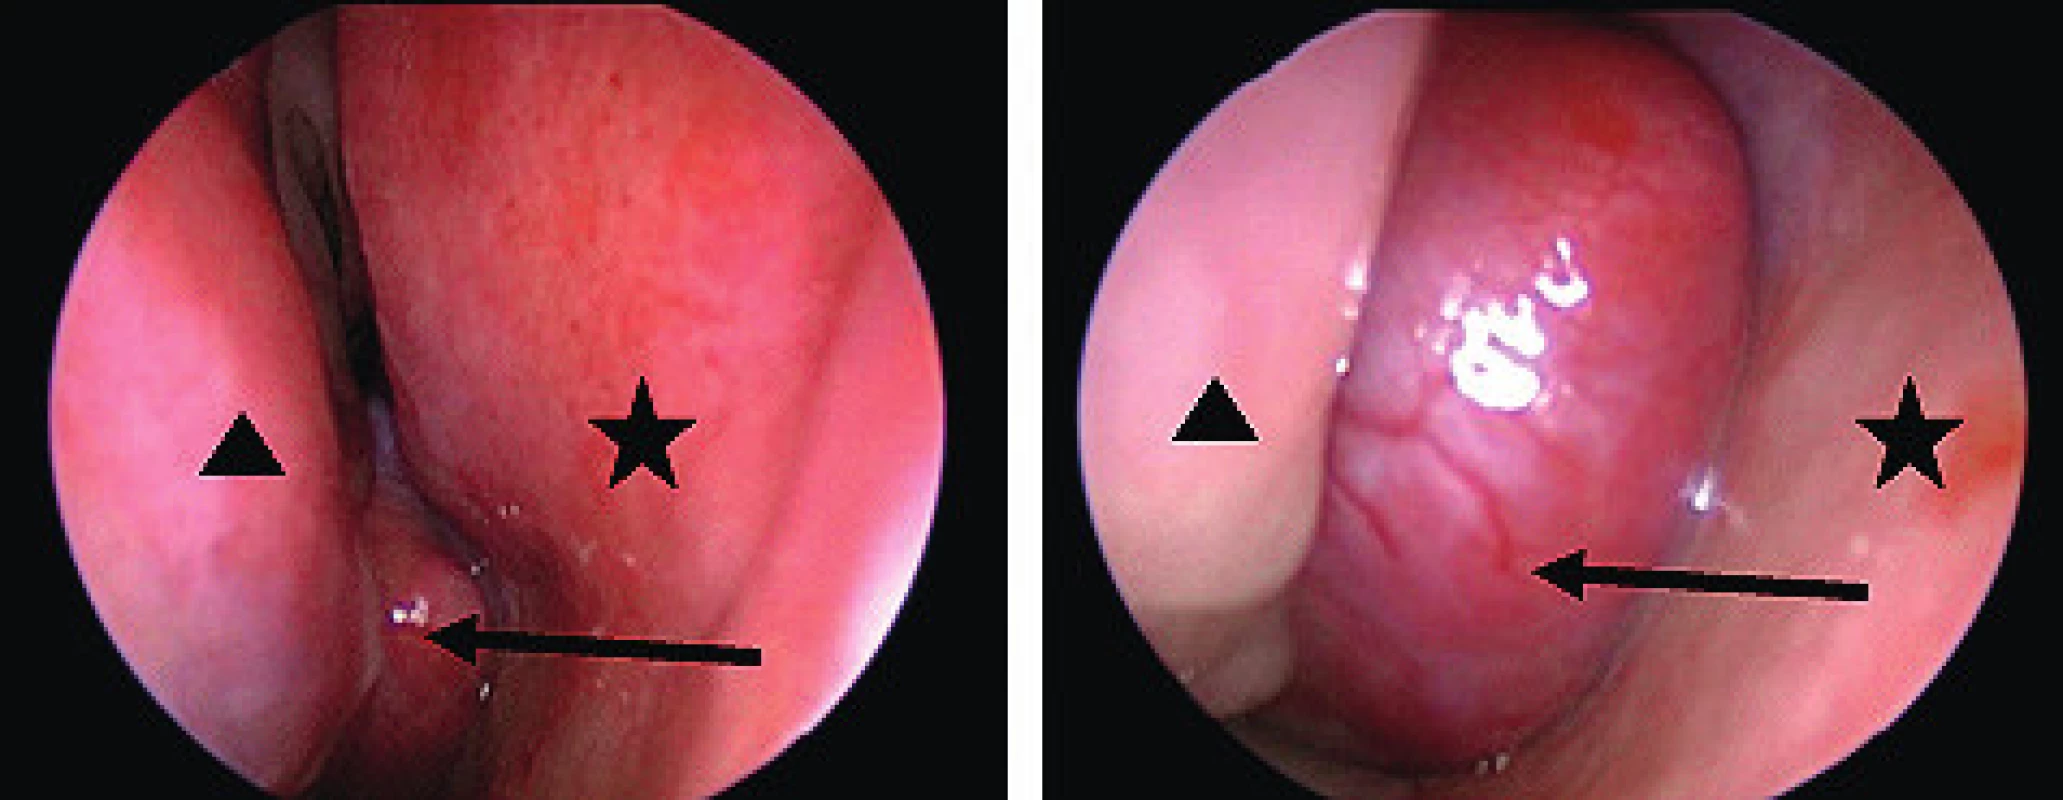 Endoskopický pohled na JNA.
šipka – tumor, hvězdička – septum, trojúhelník – dolní skořepa